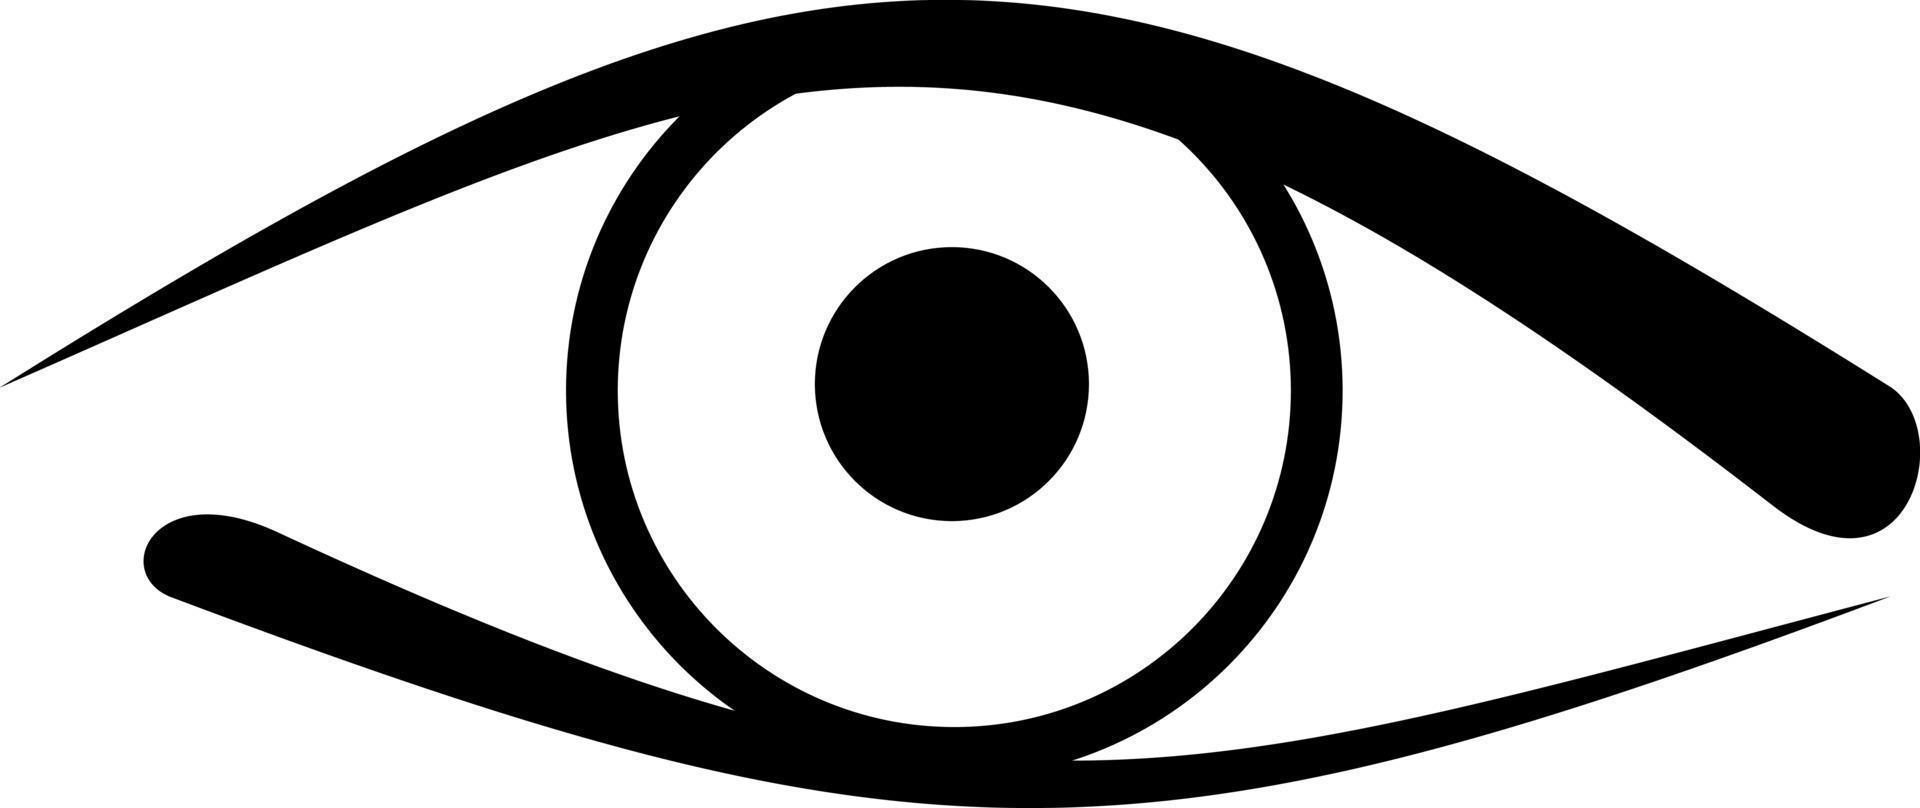 Images : icone oeil yeux ouverts vecteur